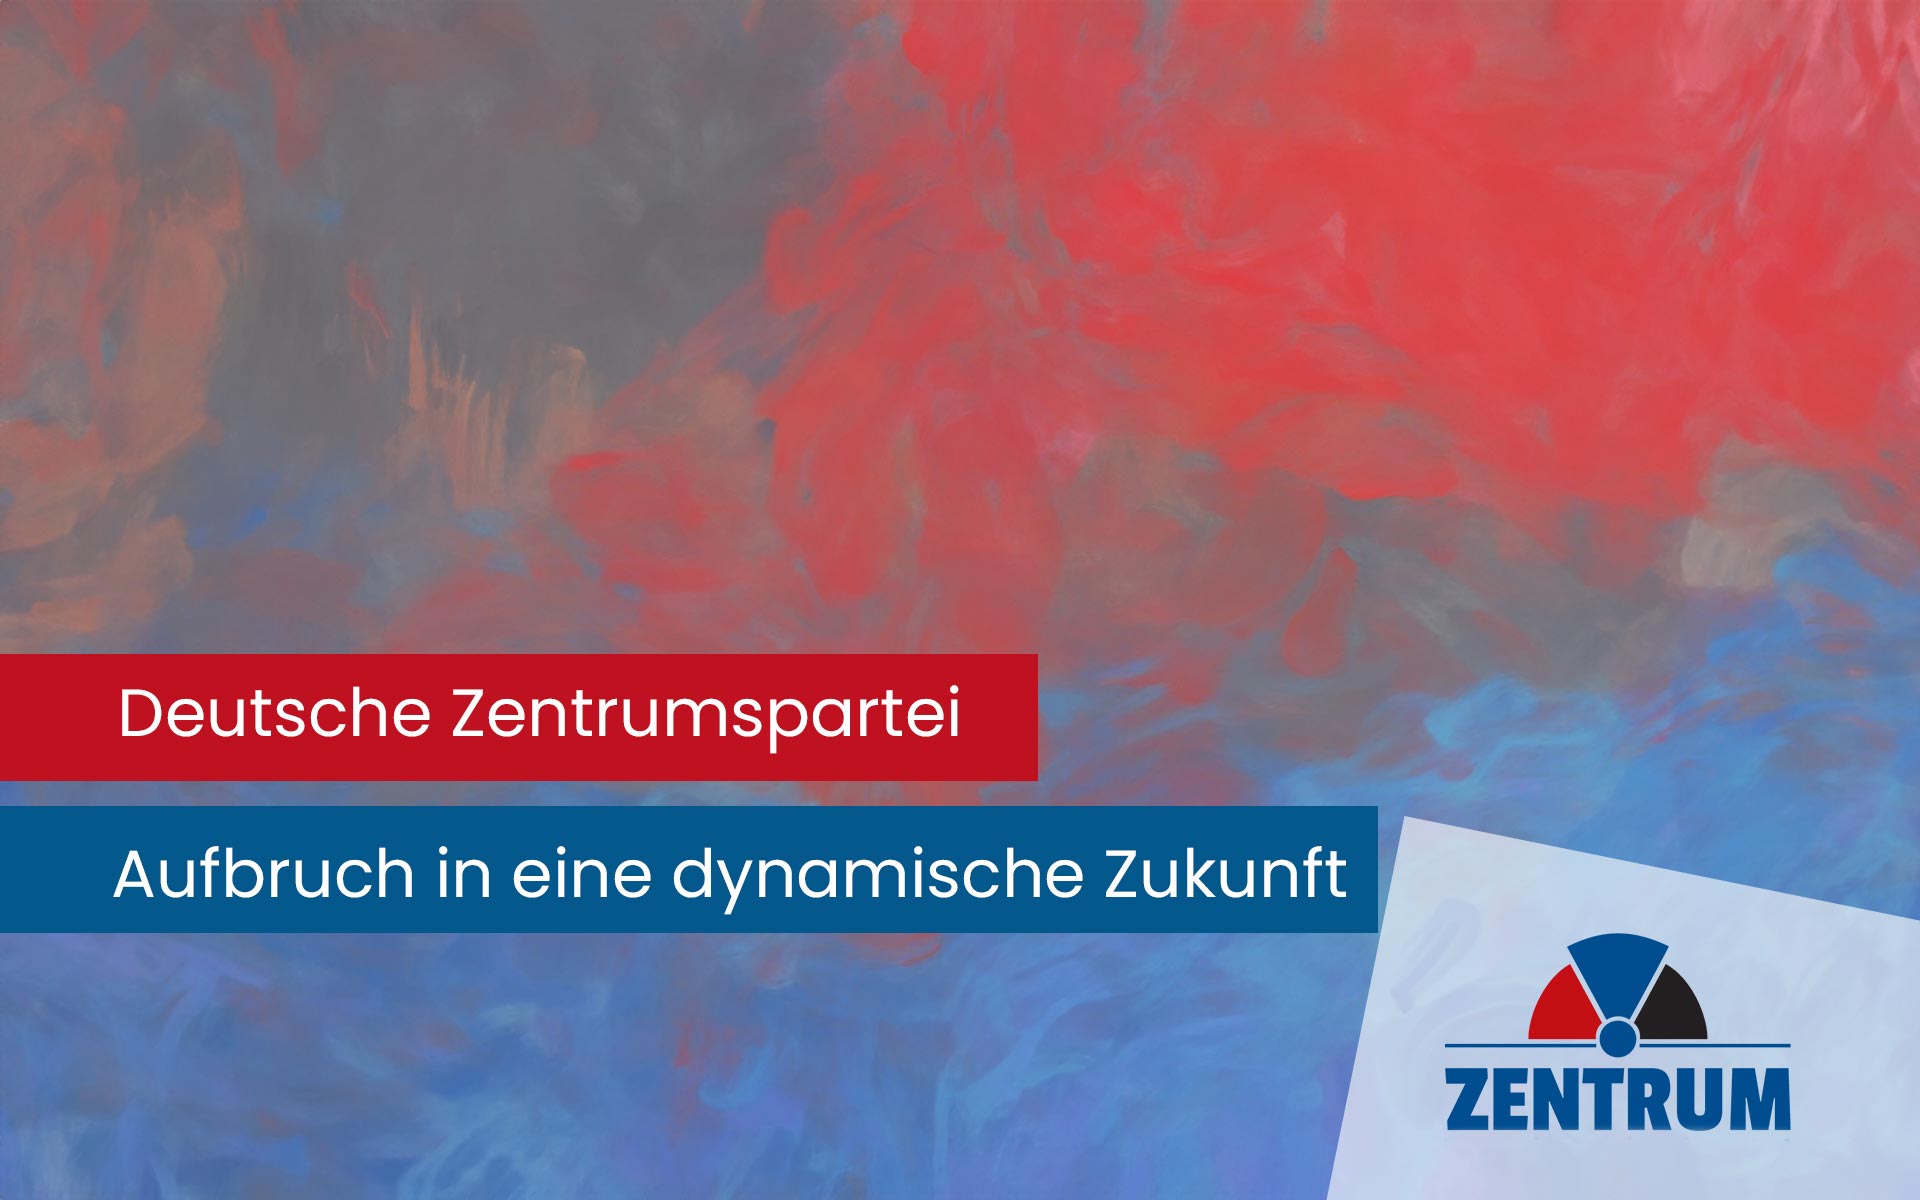 Deutsche Zentrumspartei (DZP): Erfolgreicher Bundesparteitag markiert Aufbruch in eine dynamische Zukunft